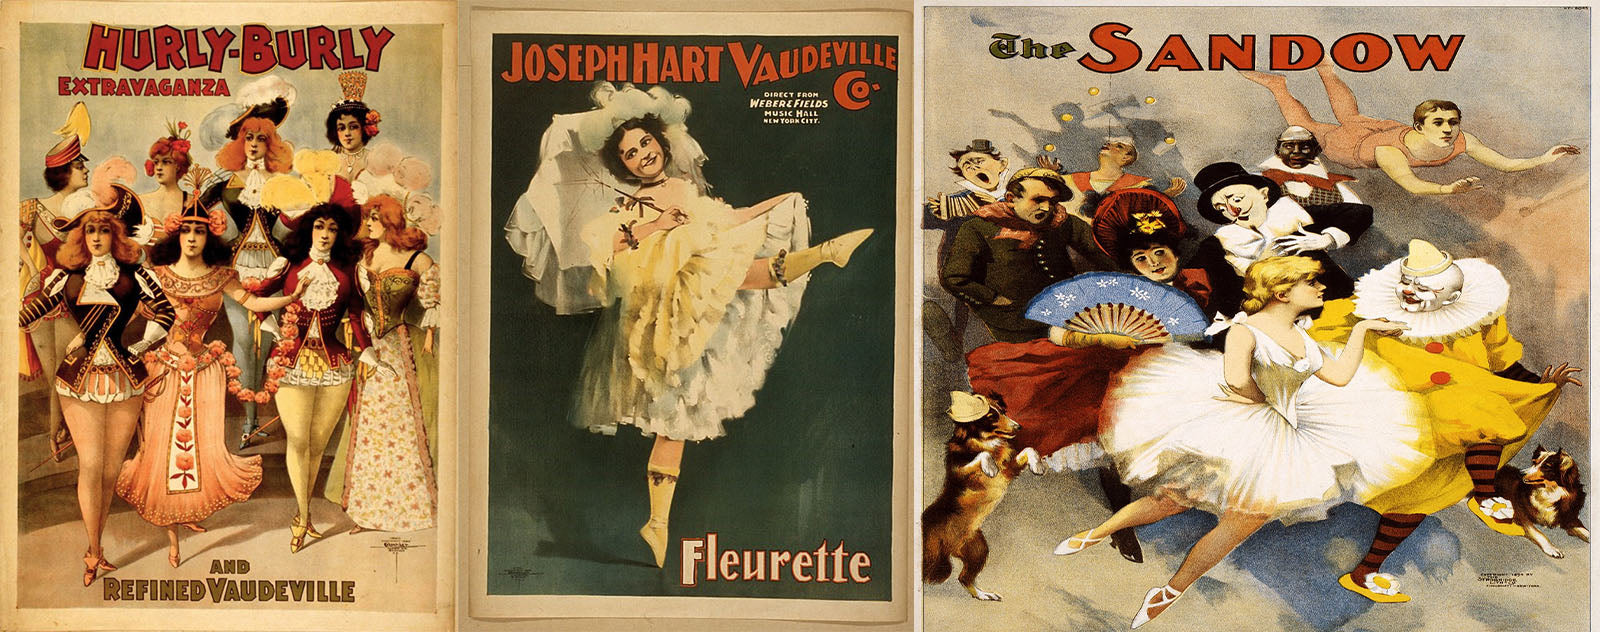 Affiche Vaudeville